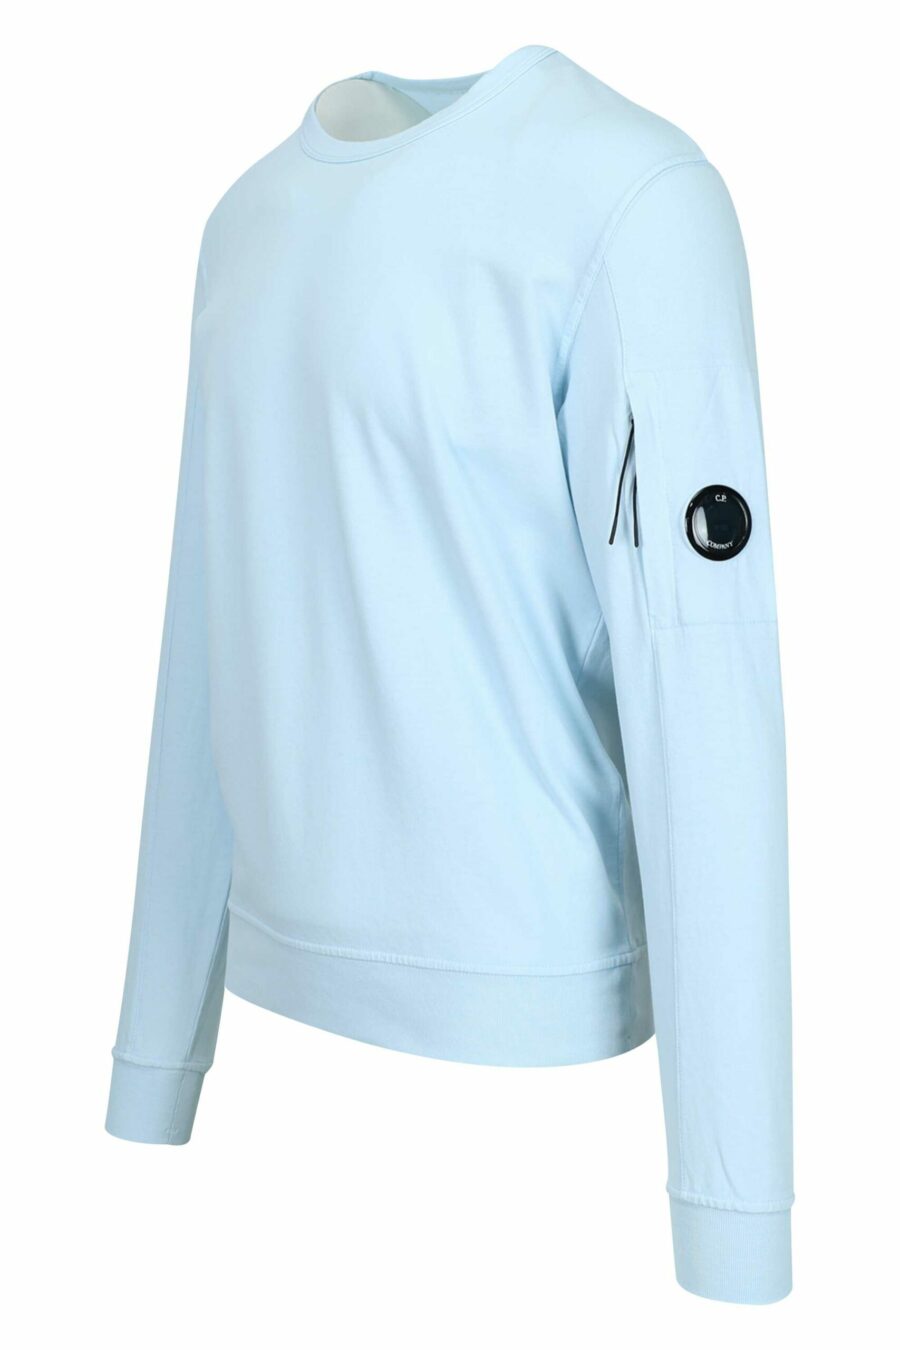 Sweat bleu clair avec poche et lentille mini-logo - 7620943745269 1 à l'échelle